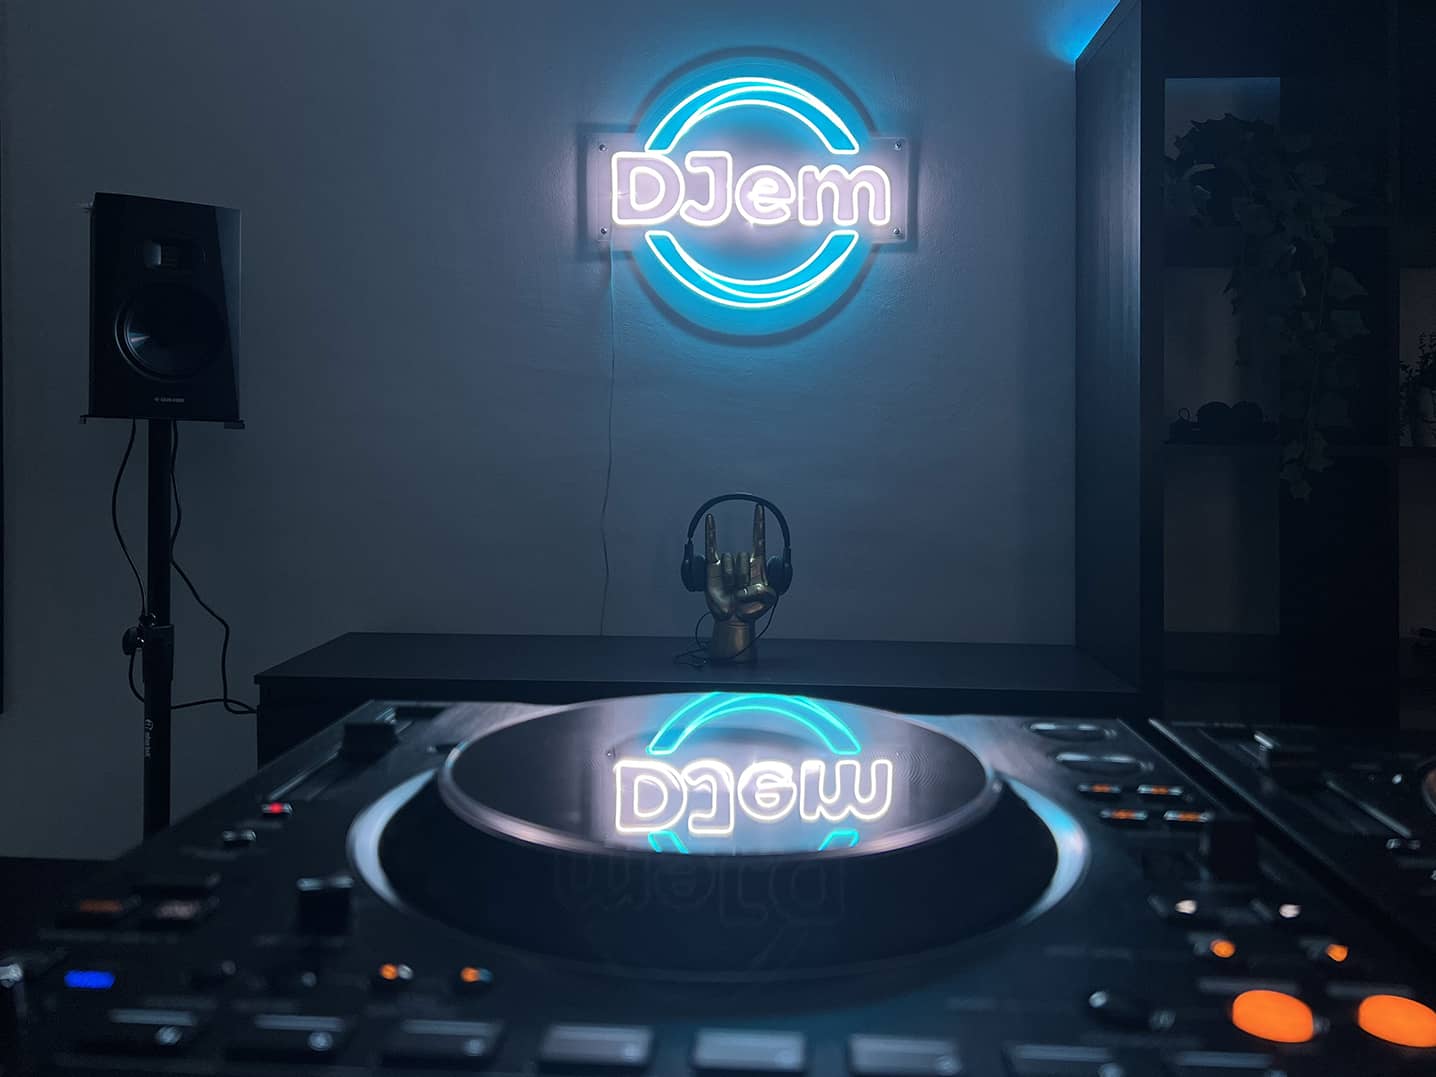 DJem DJ room